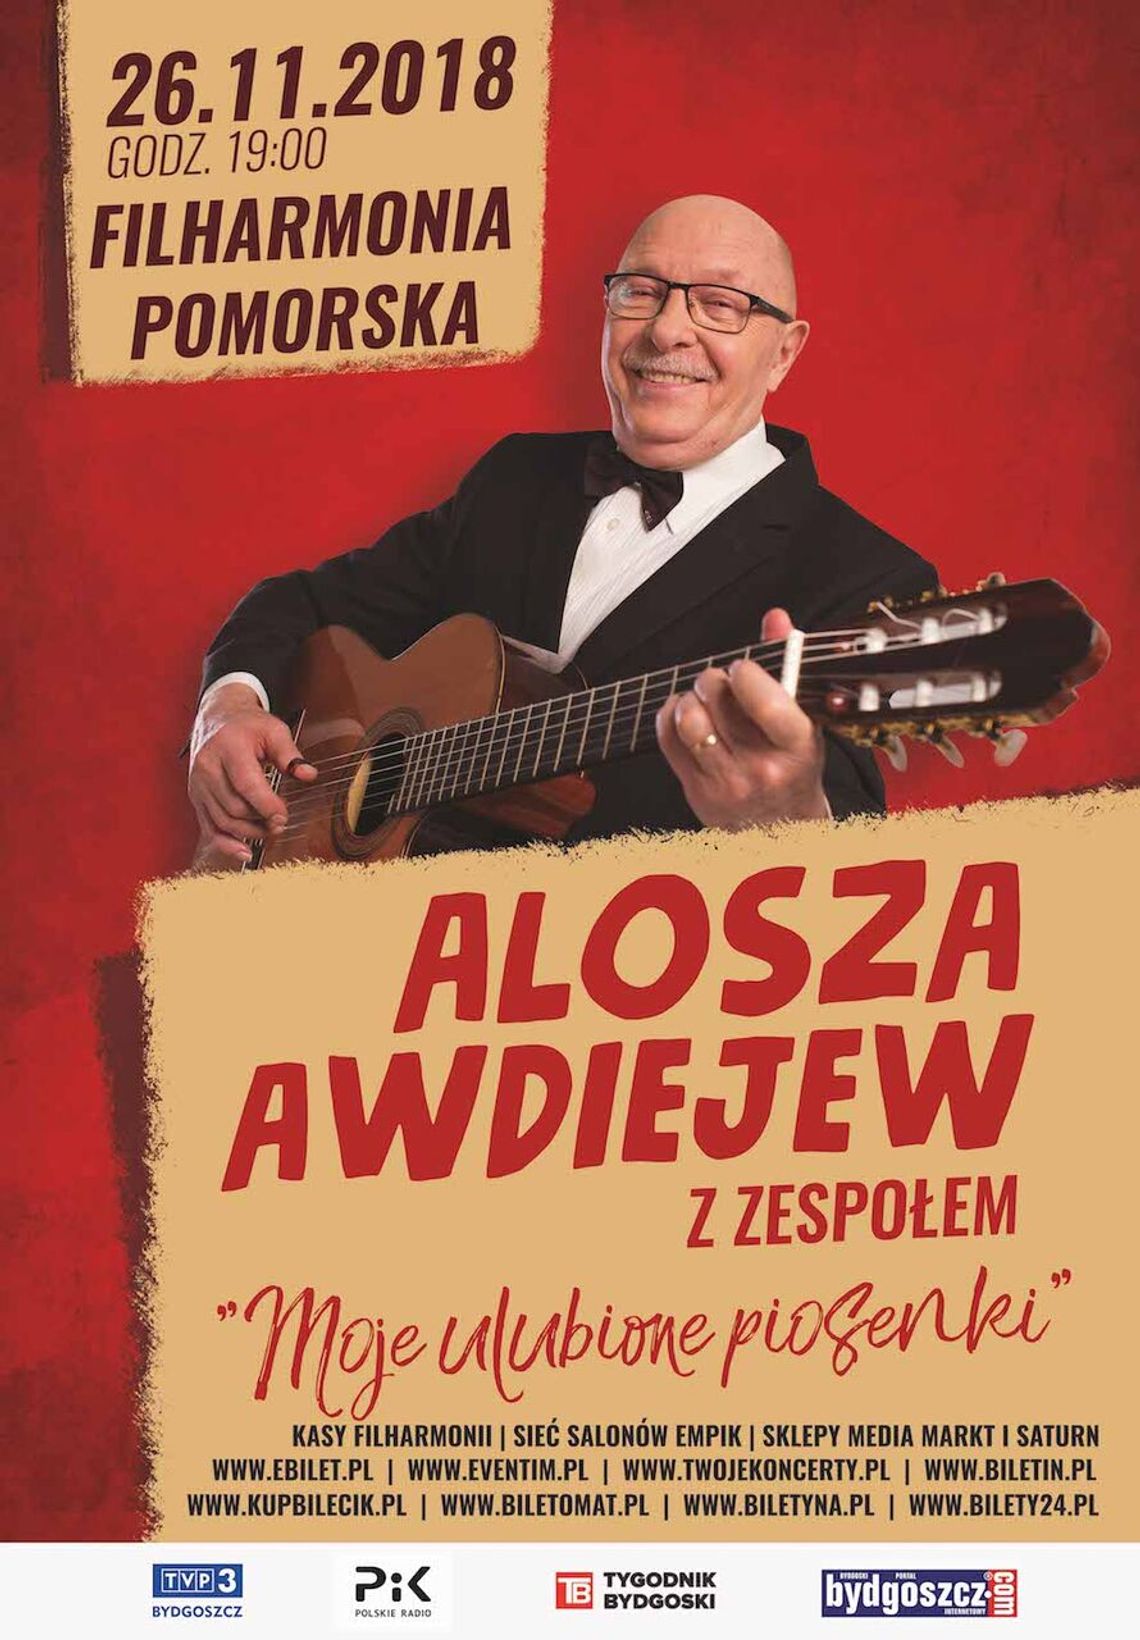 Alosza Awdiejew z zespołem zagra w Bydgoszczy. KONKURS